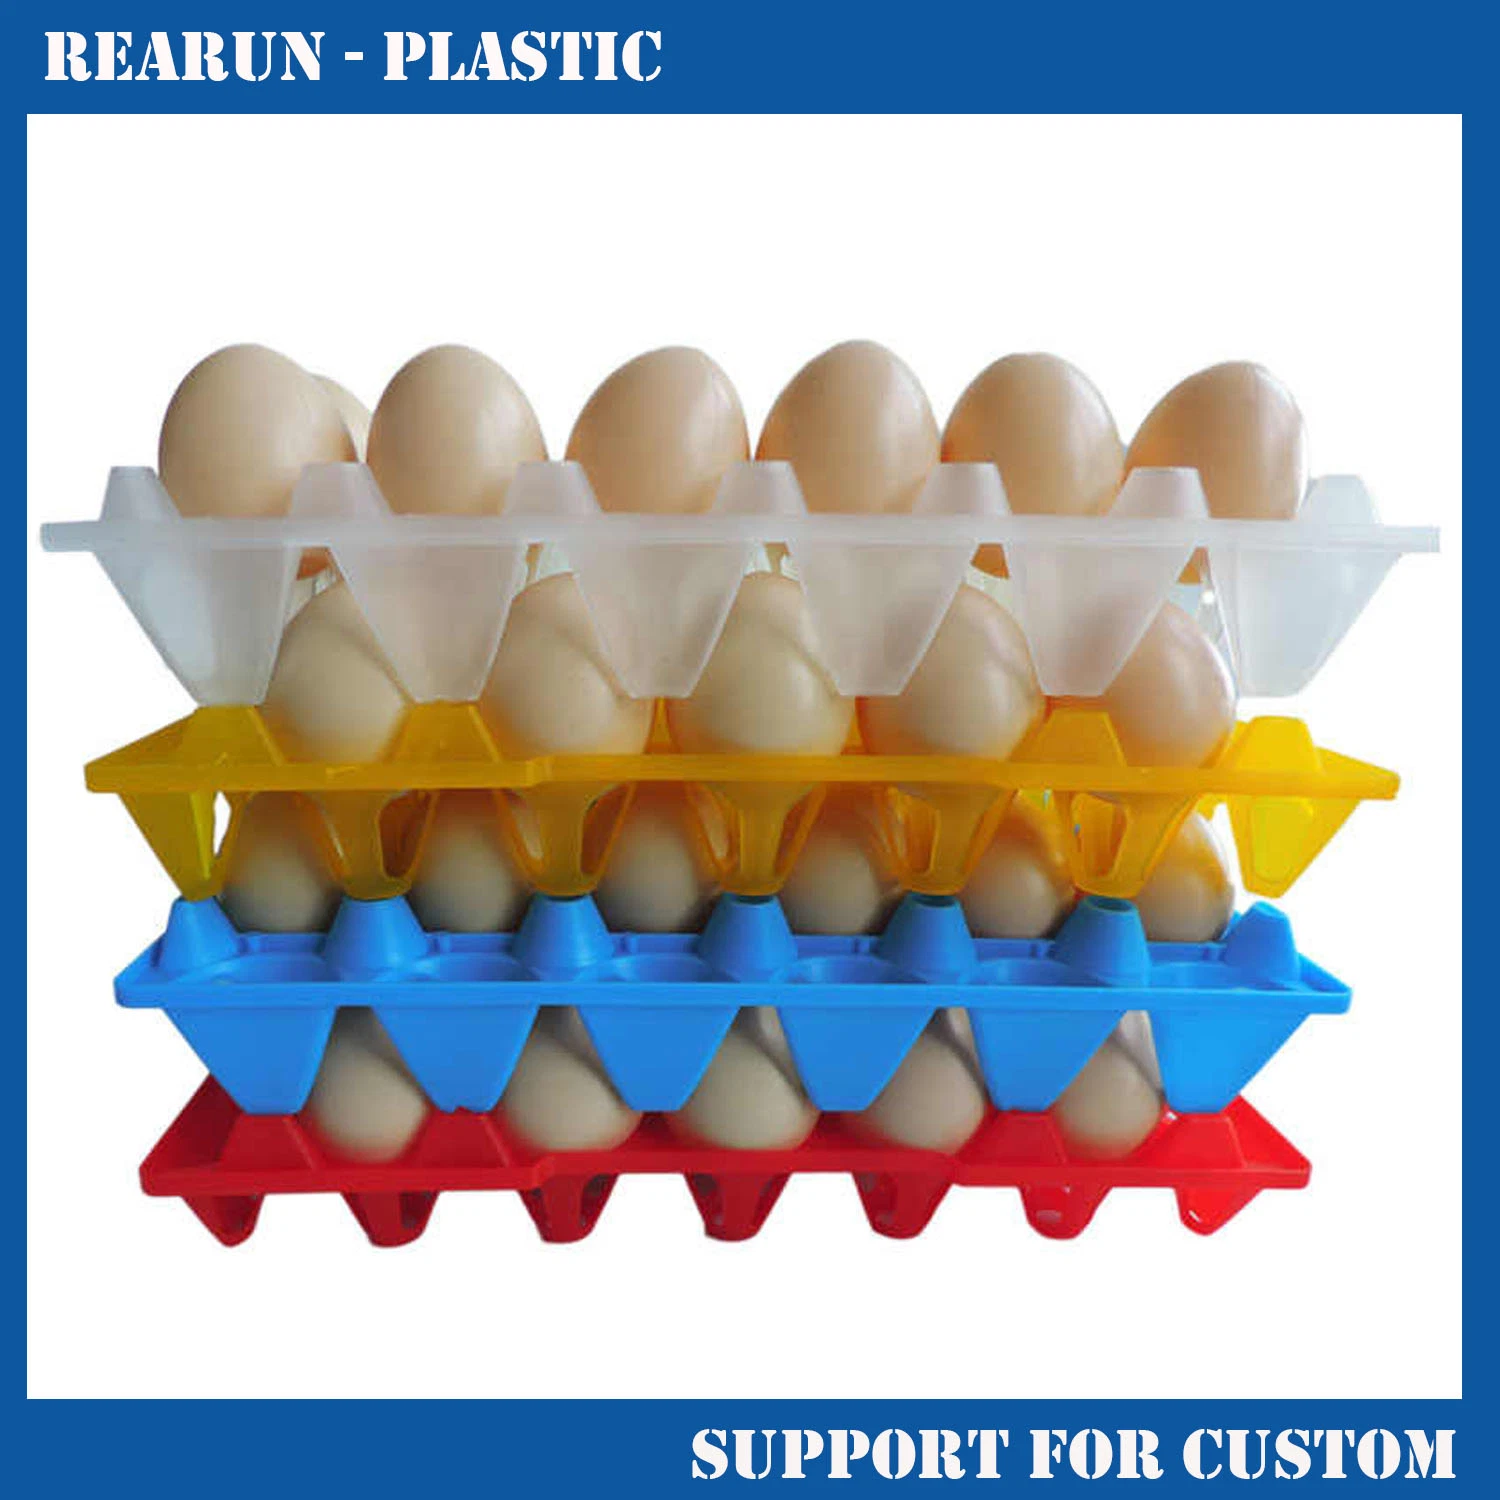 Precio competitivo de la bandeja de huevos de plástico con 88 huevos a la venta